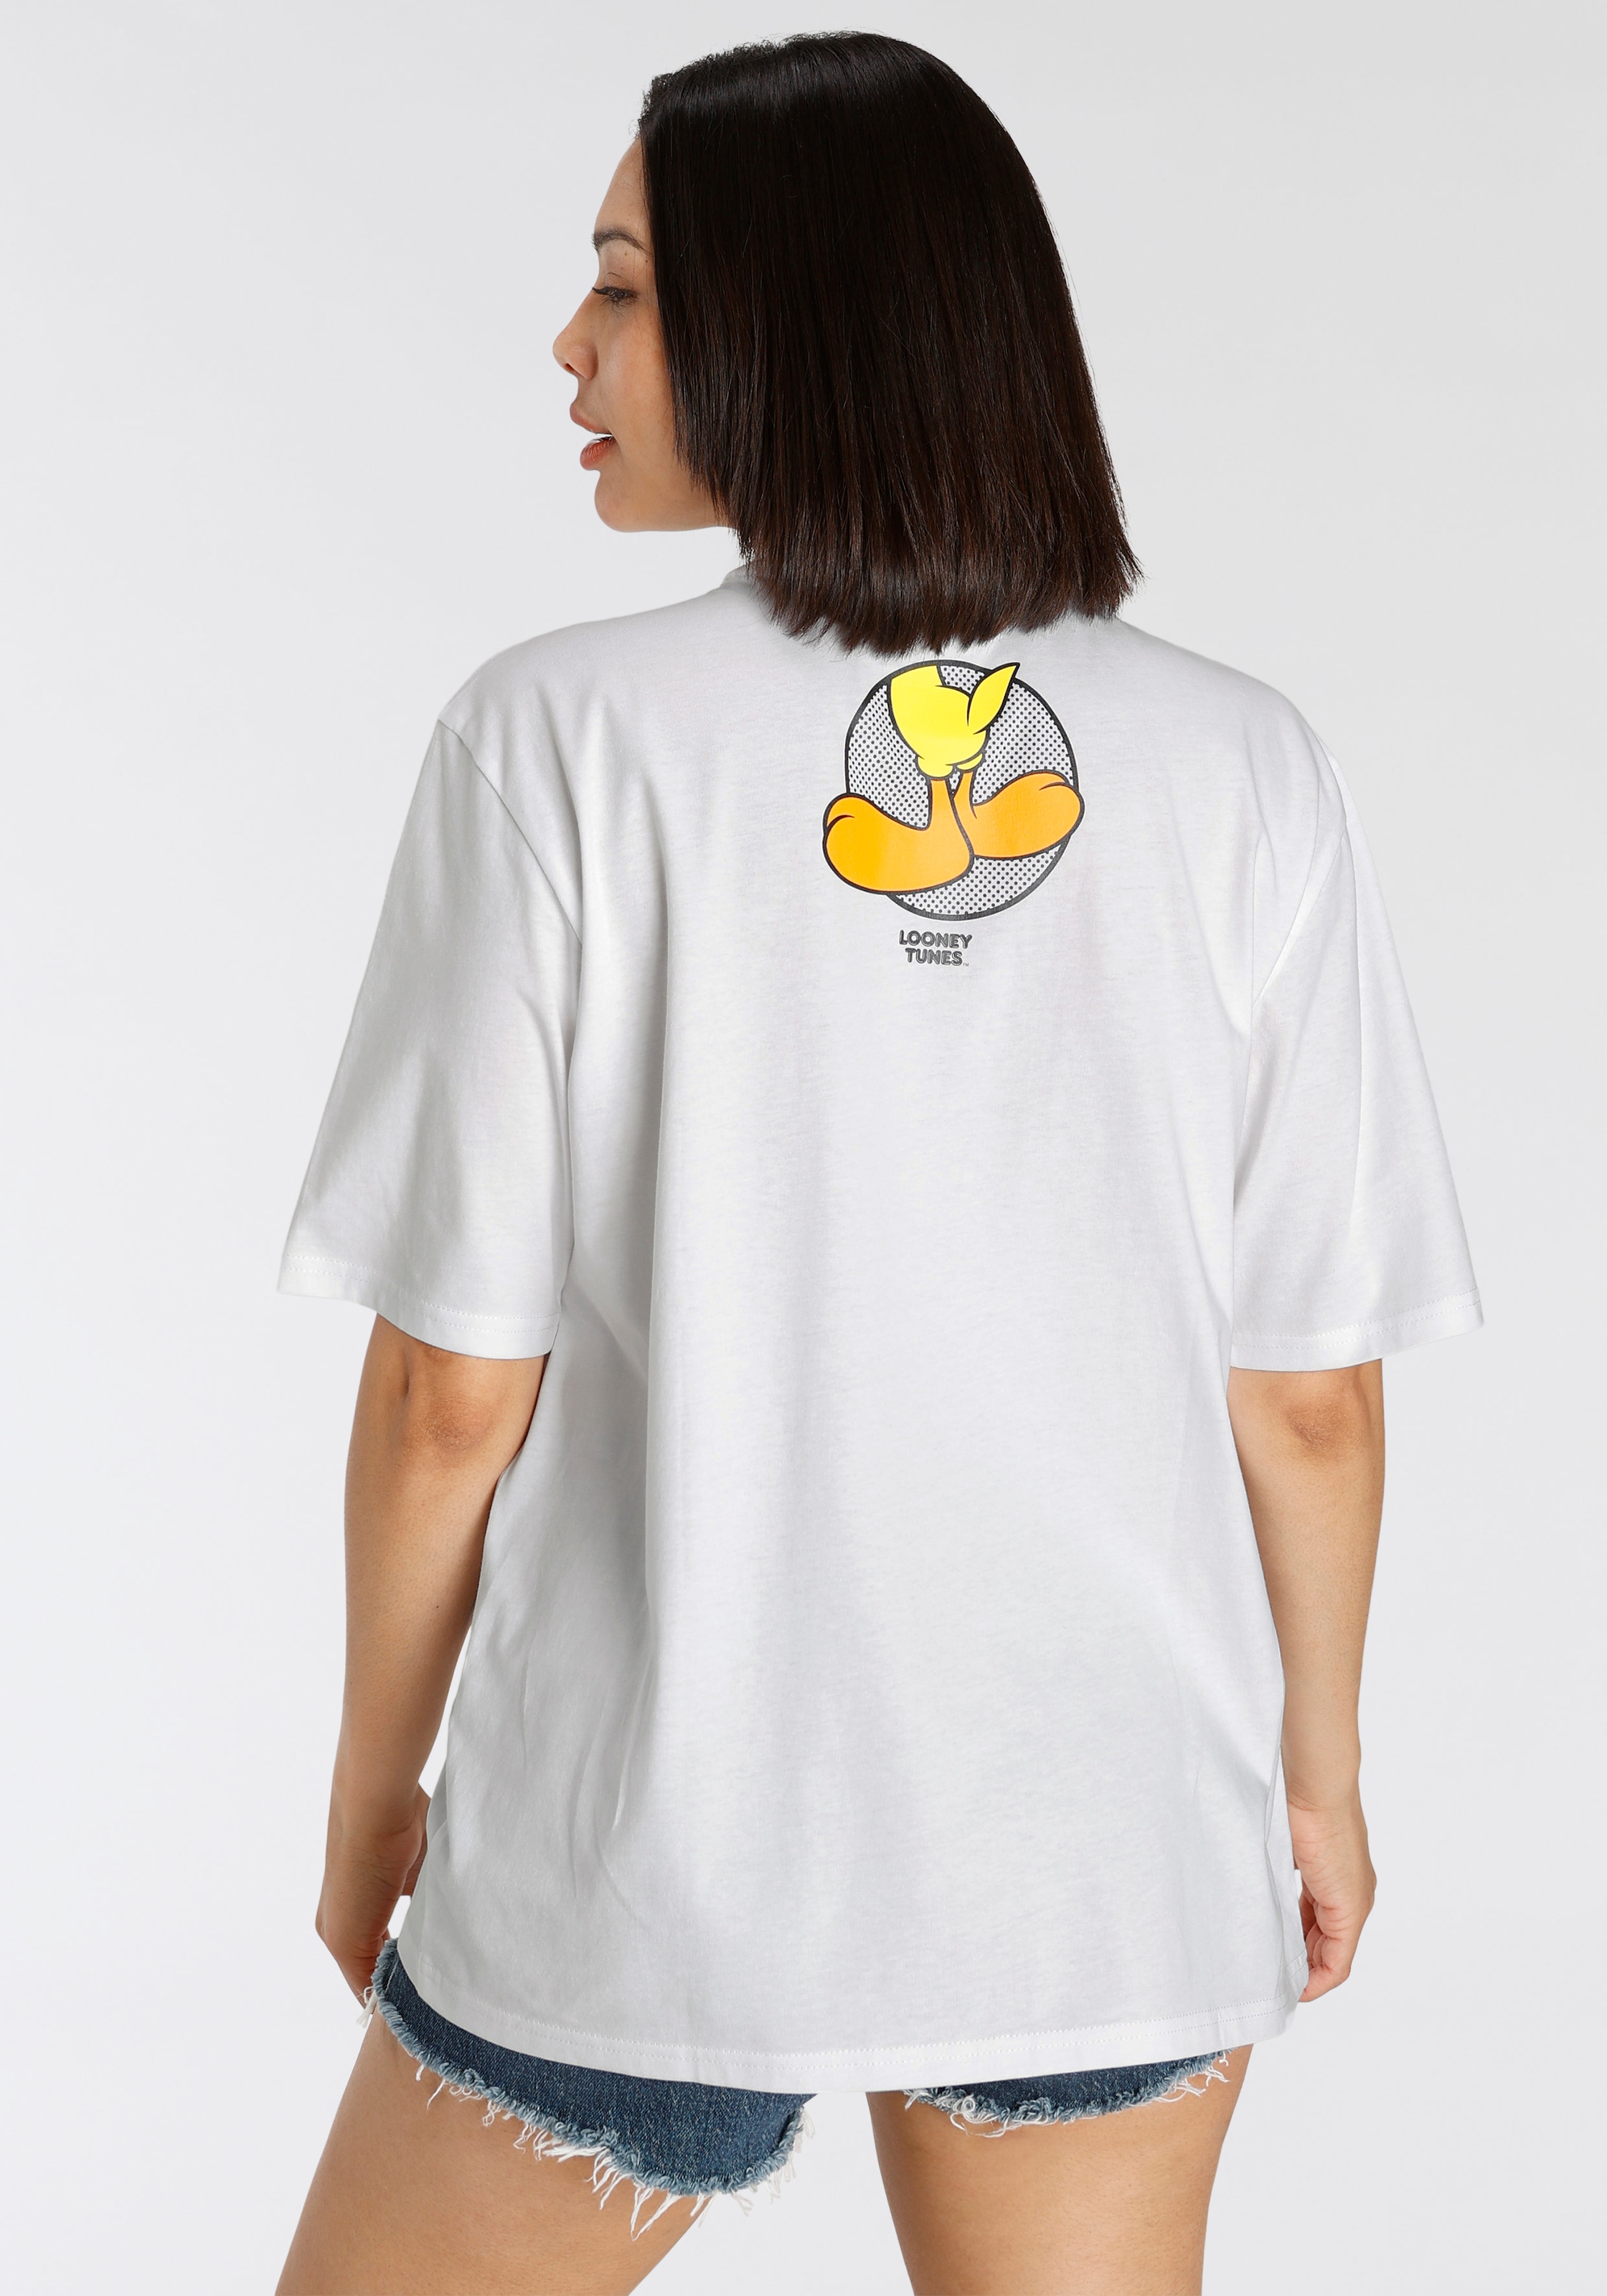 New online kaufen York Tweety T-Shirt, Schweiz Jelmoli-Versand bei T-Shirt Capelli